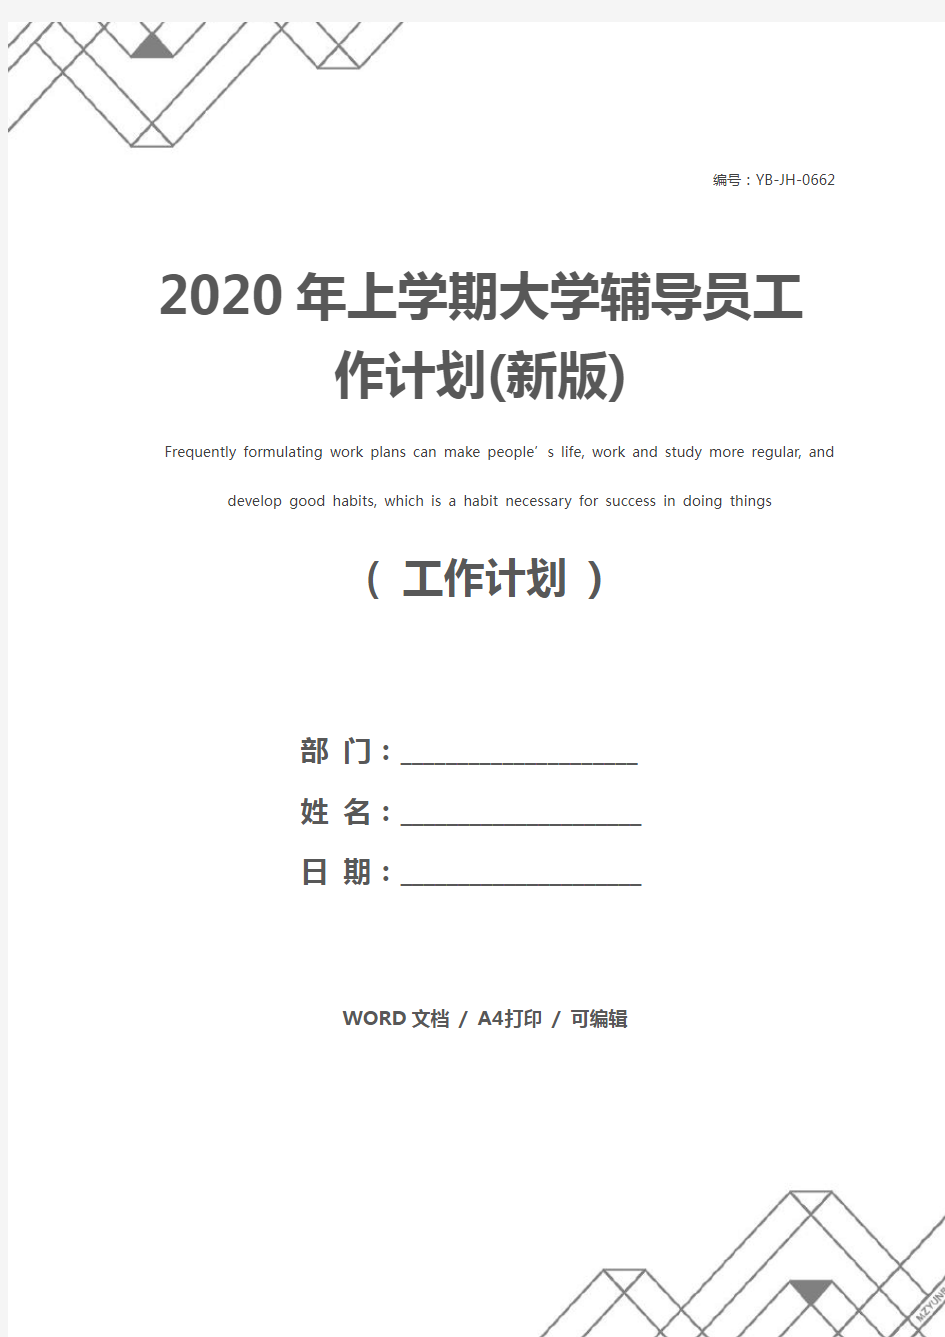 2020年上学期大学辅导员工作计划(新版)